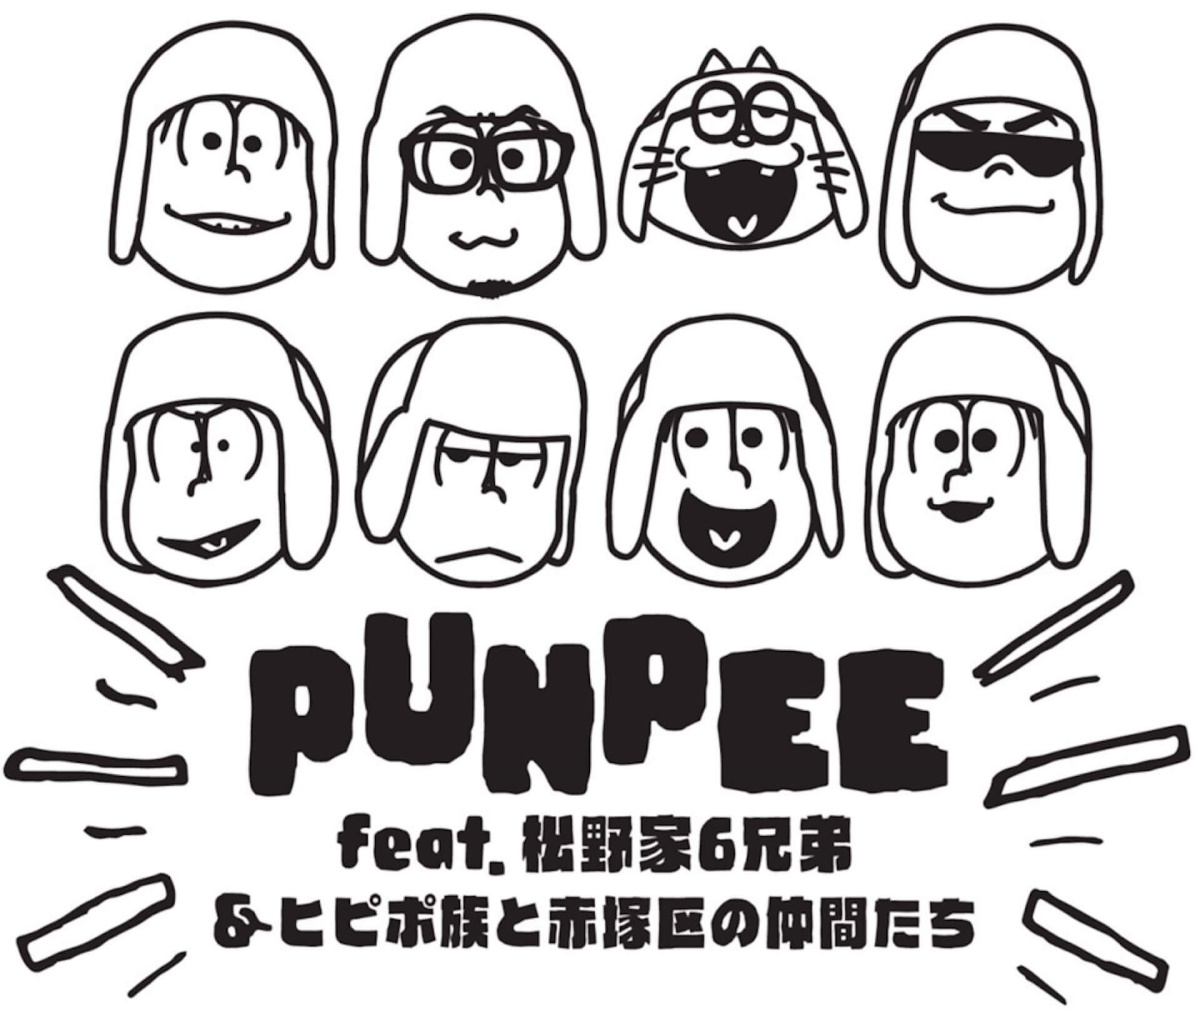 『星野源 - さらしもの (feat. PUNPEE)』収録の『Same Thing』ジャケット